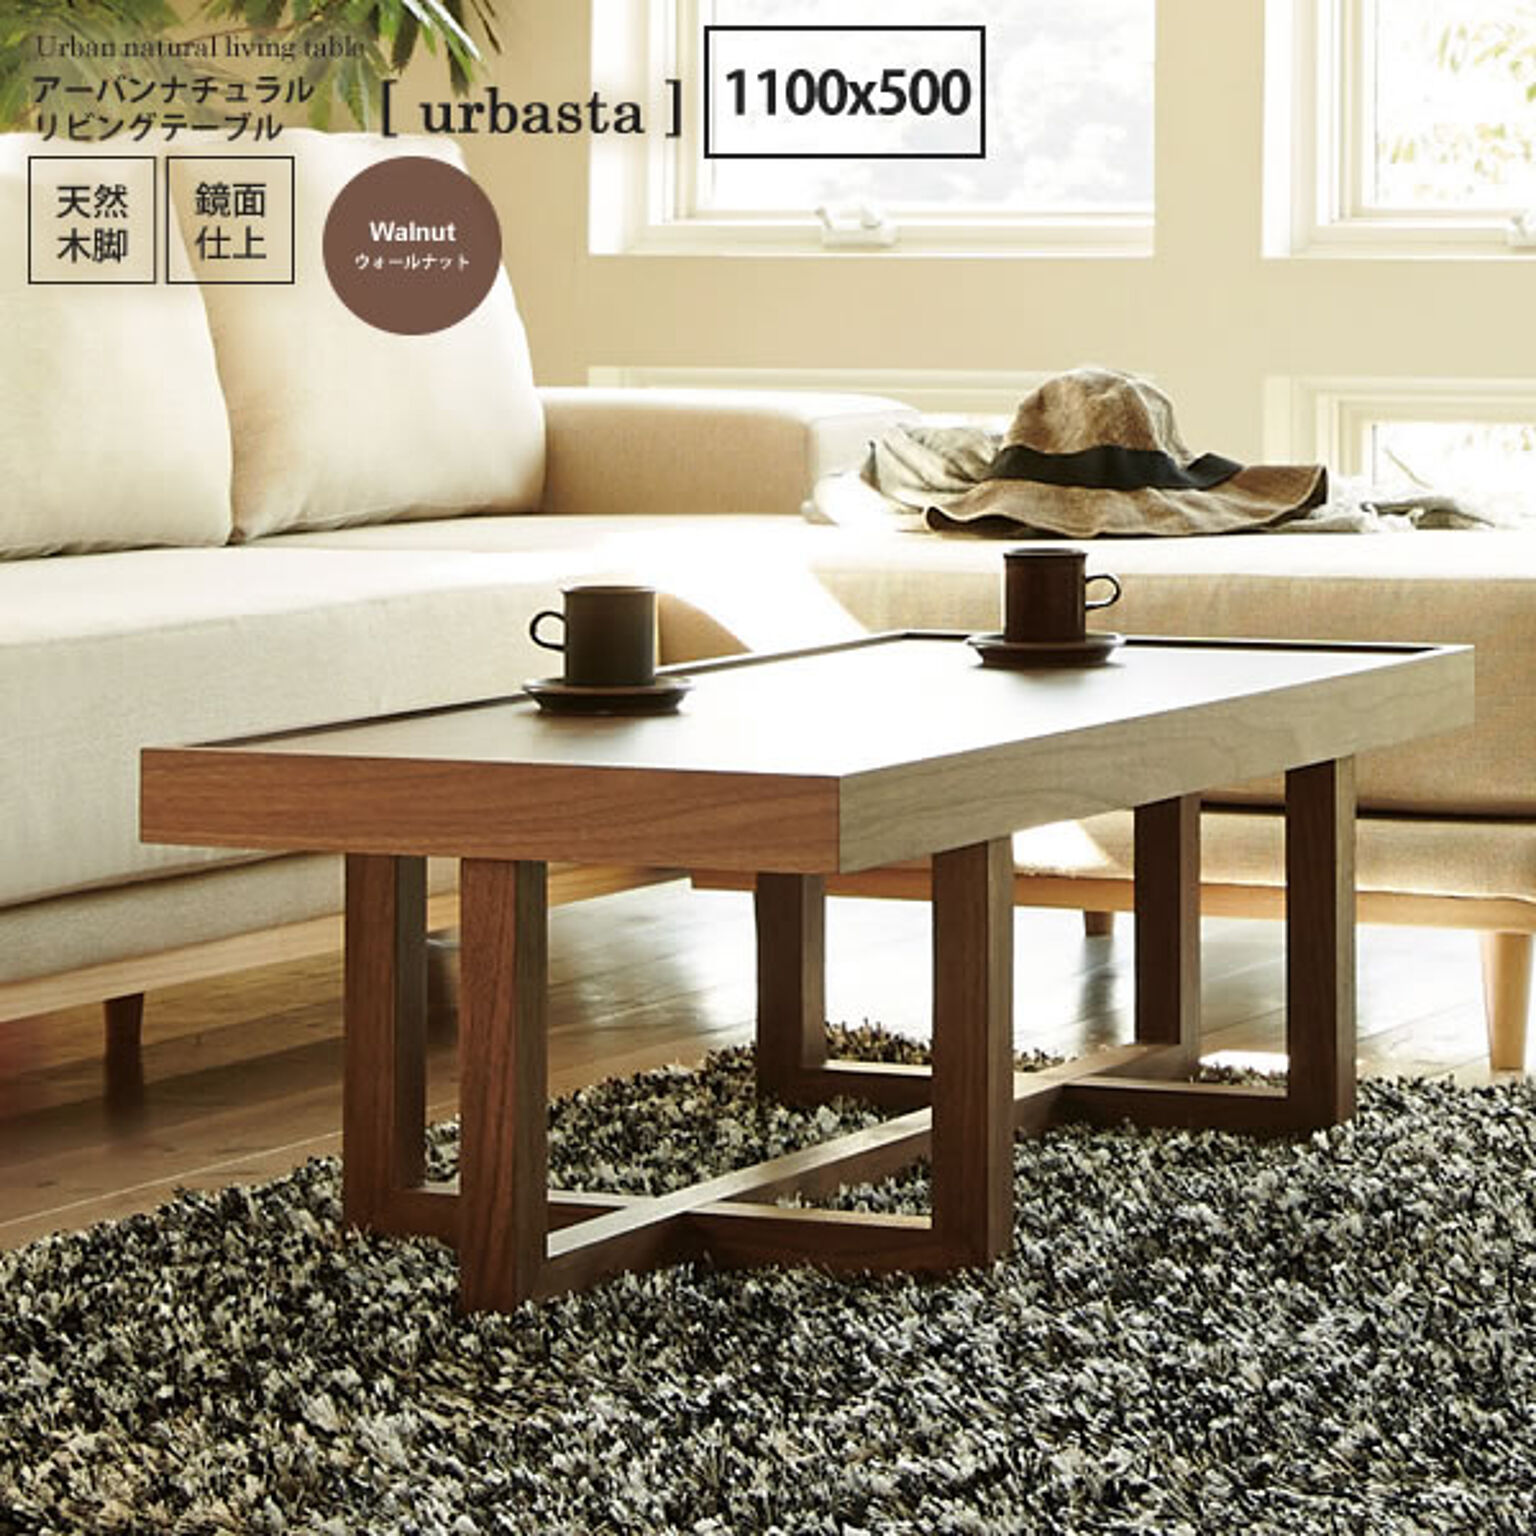 urbasta リビングテーブル アーバンナチュラル 1100x500 ブラウン